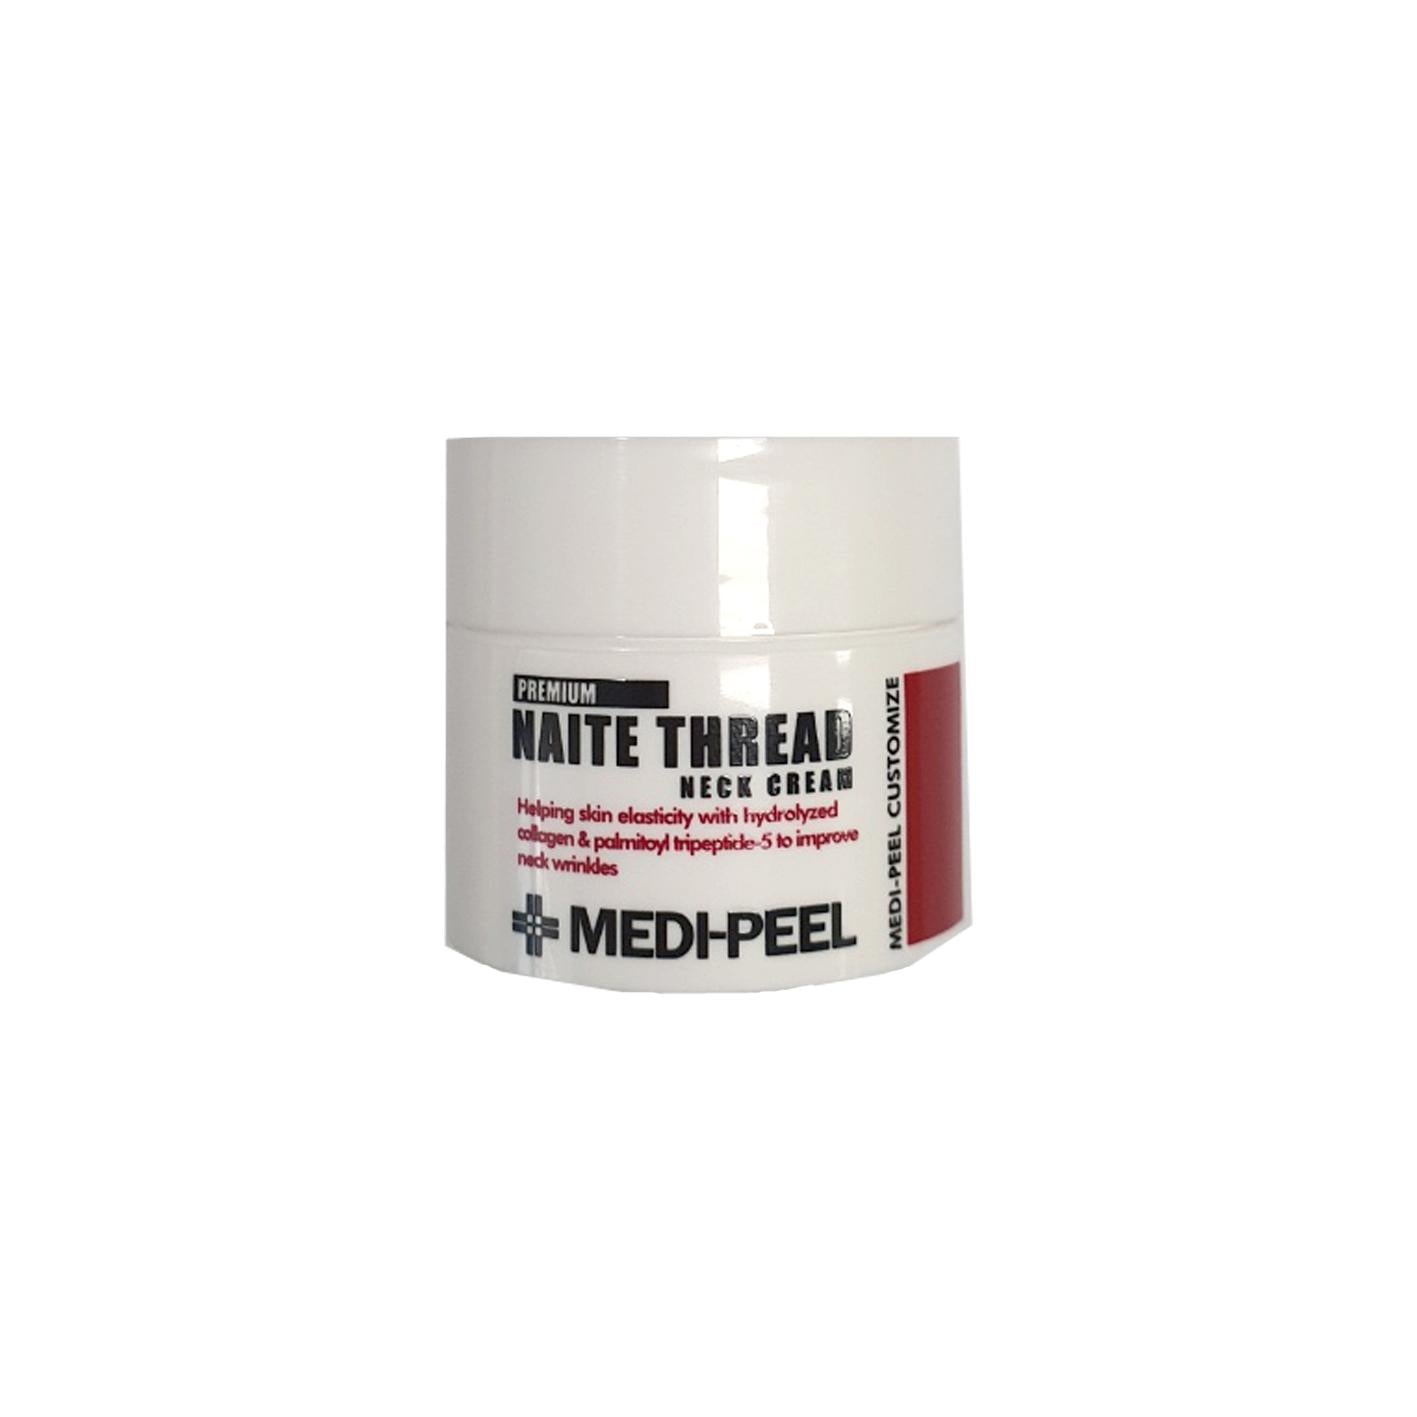 MEDI-PEEL Premium Naite Thread Neck Cream 10g (miniature)